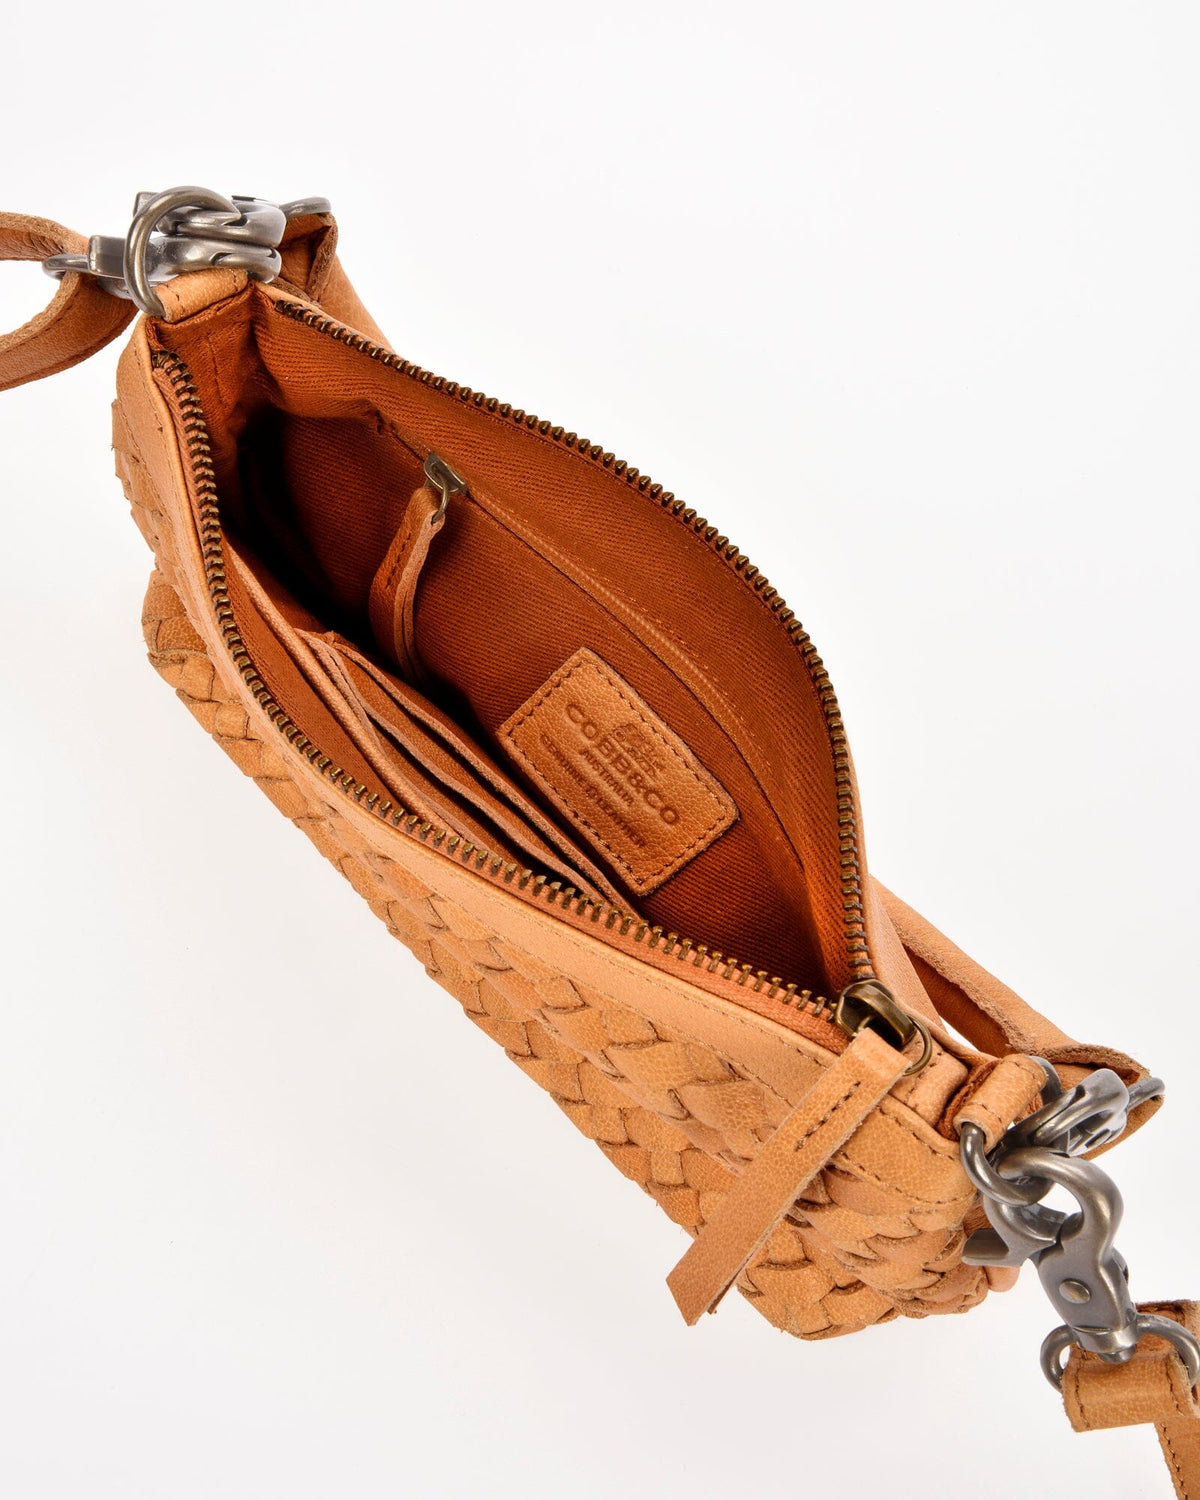 Durack Woven Leather Shoulder/Crossbody Bag